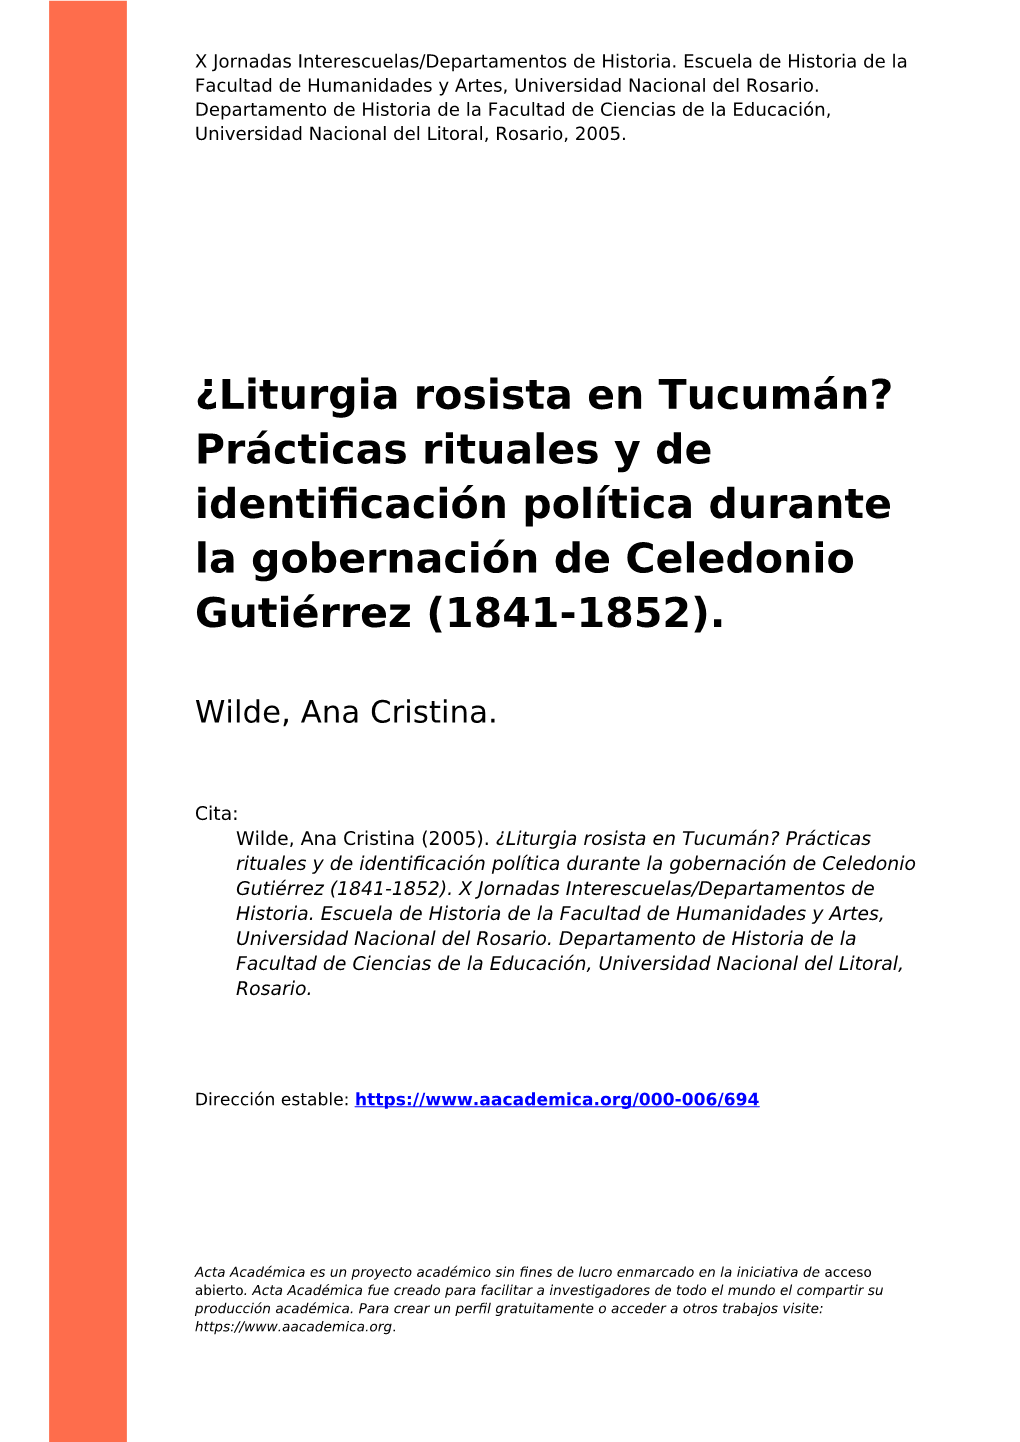 ¿Liturgia Rosista En Tucumán? Prácticas Rituales Y De Identiﬁcación Política Durante La Gobernación De Celedonio Gutiérrez (1841-1852)